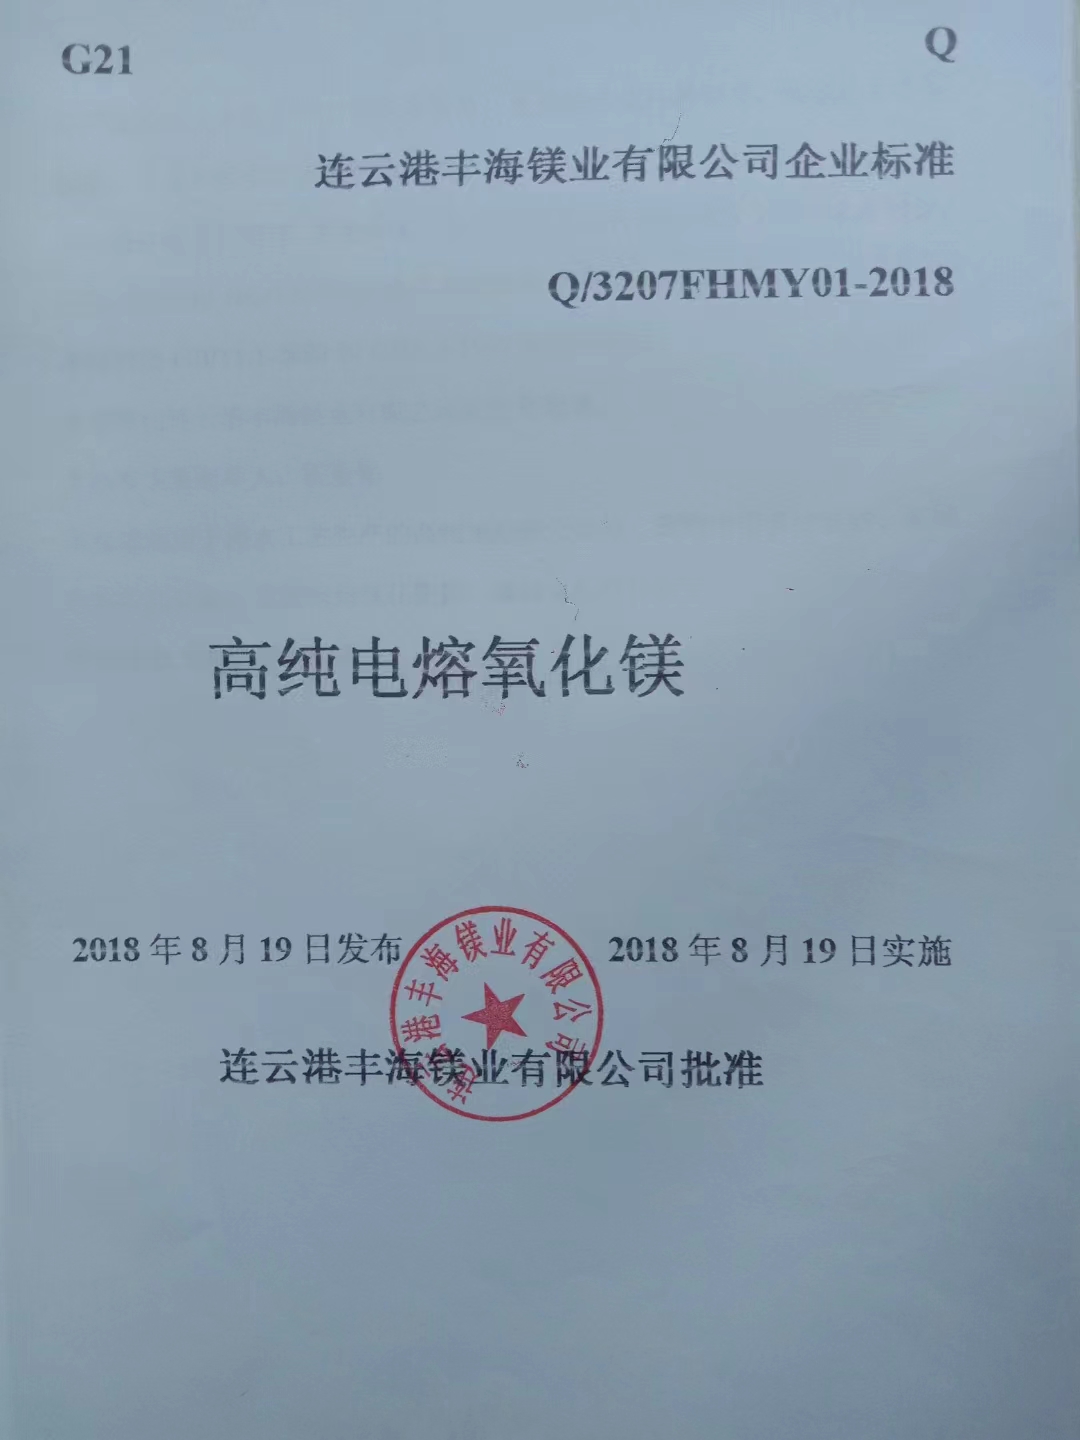 高纯电熔氧化镁砂镁砂标准技术指标Q/3207FHMY01-2018